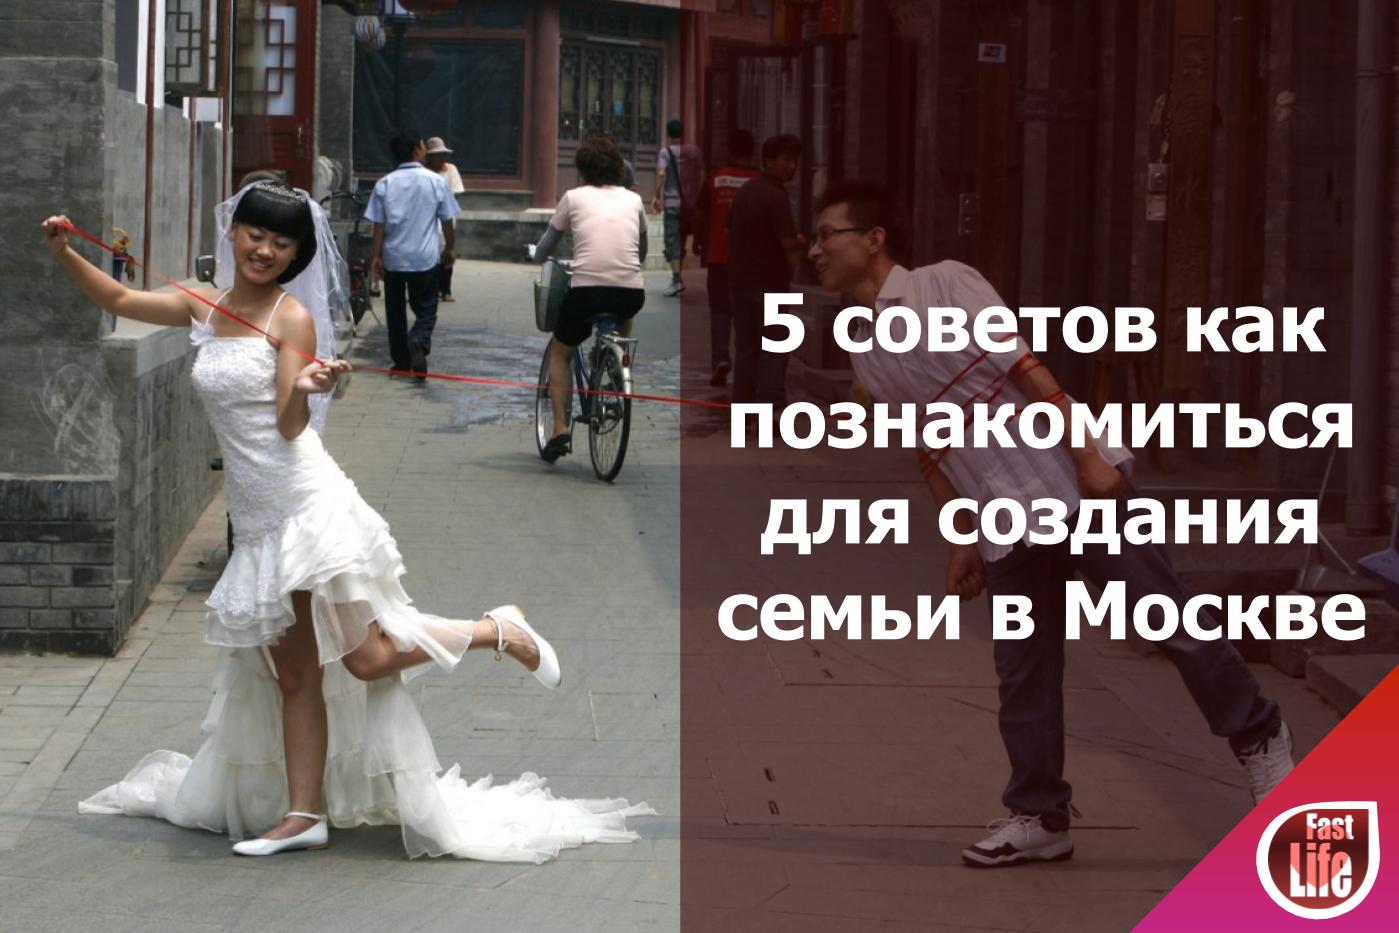 5 простых советов как познакомиться для создания семьи в Москве